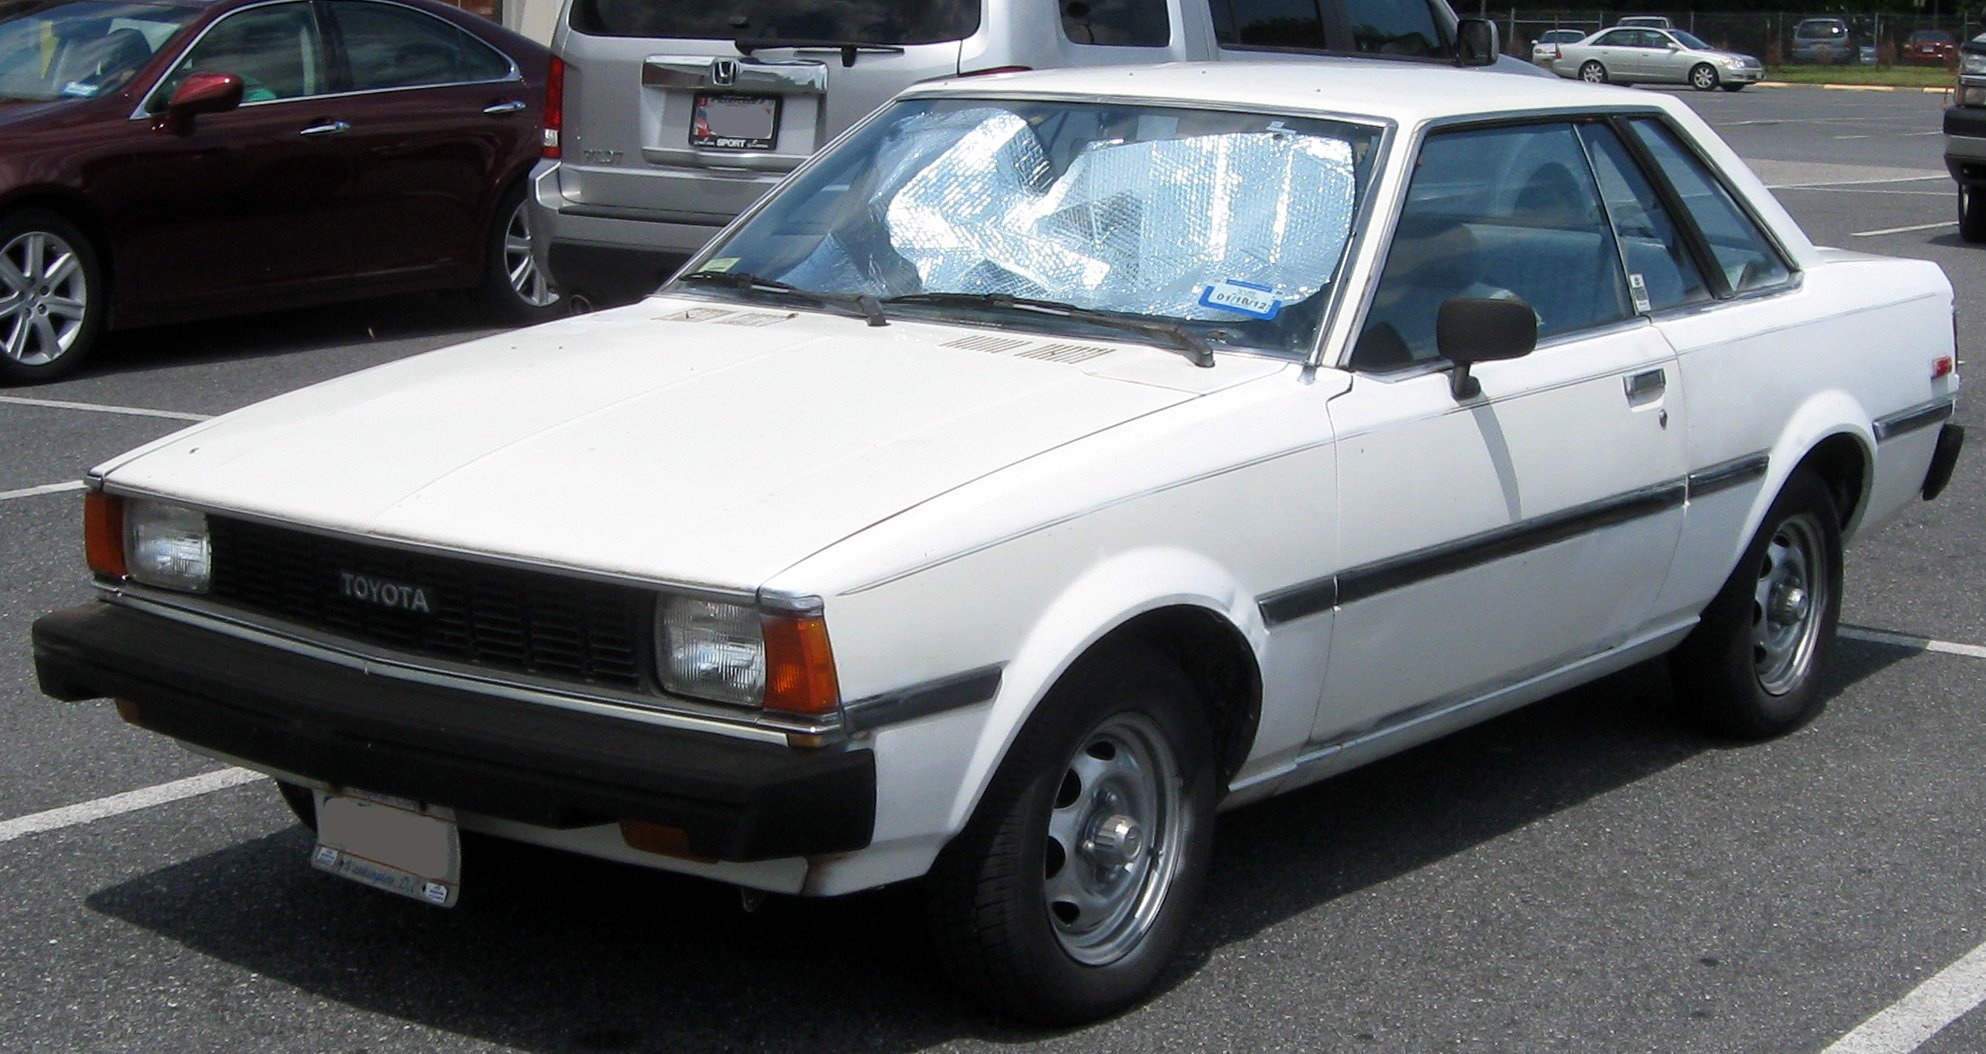 Сток 70. Toyota Corolla Coupe 1979. Toyota Sprinter ae70 Coupe. Toyota Corolla e21. Toyota Corolla Sprinter 1980.